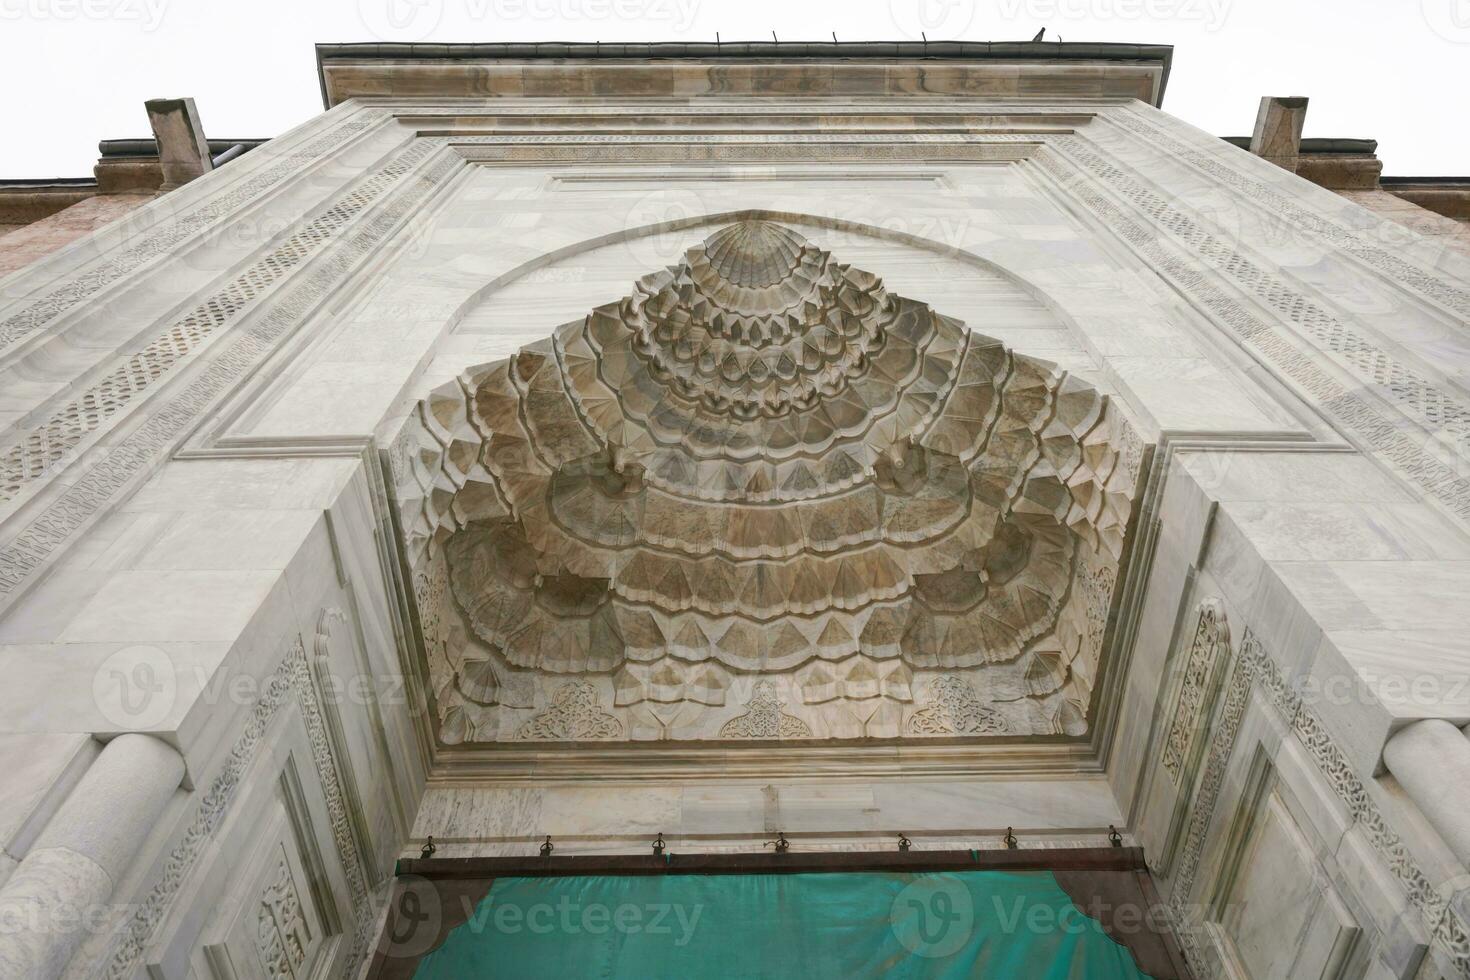 groots moskee van slijmbeurs, ulu camii in slijmbeurs, turkiye foto